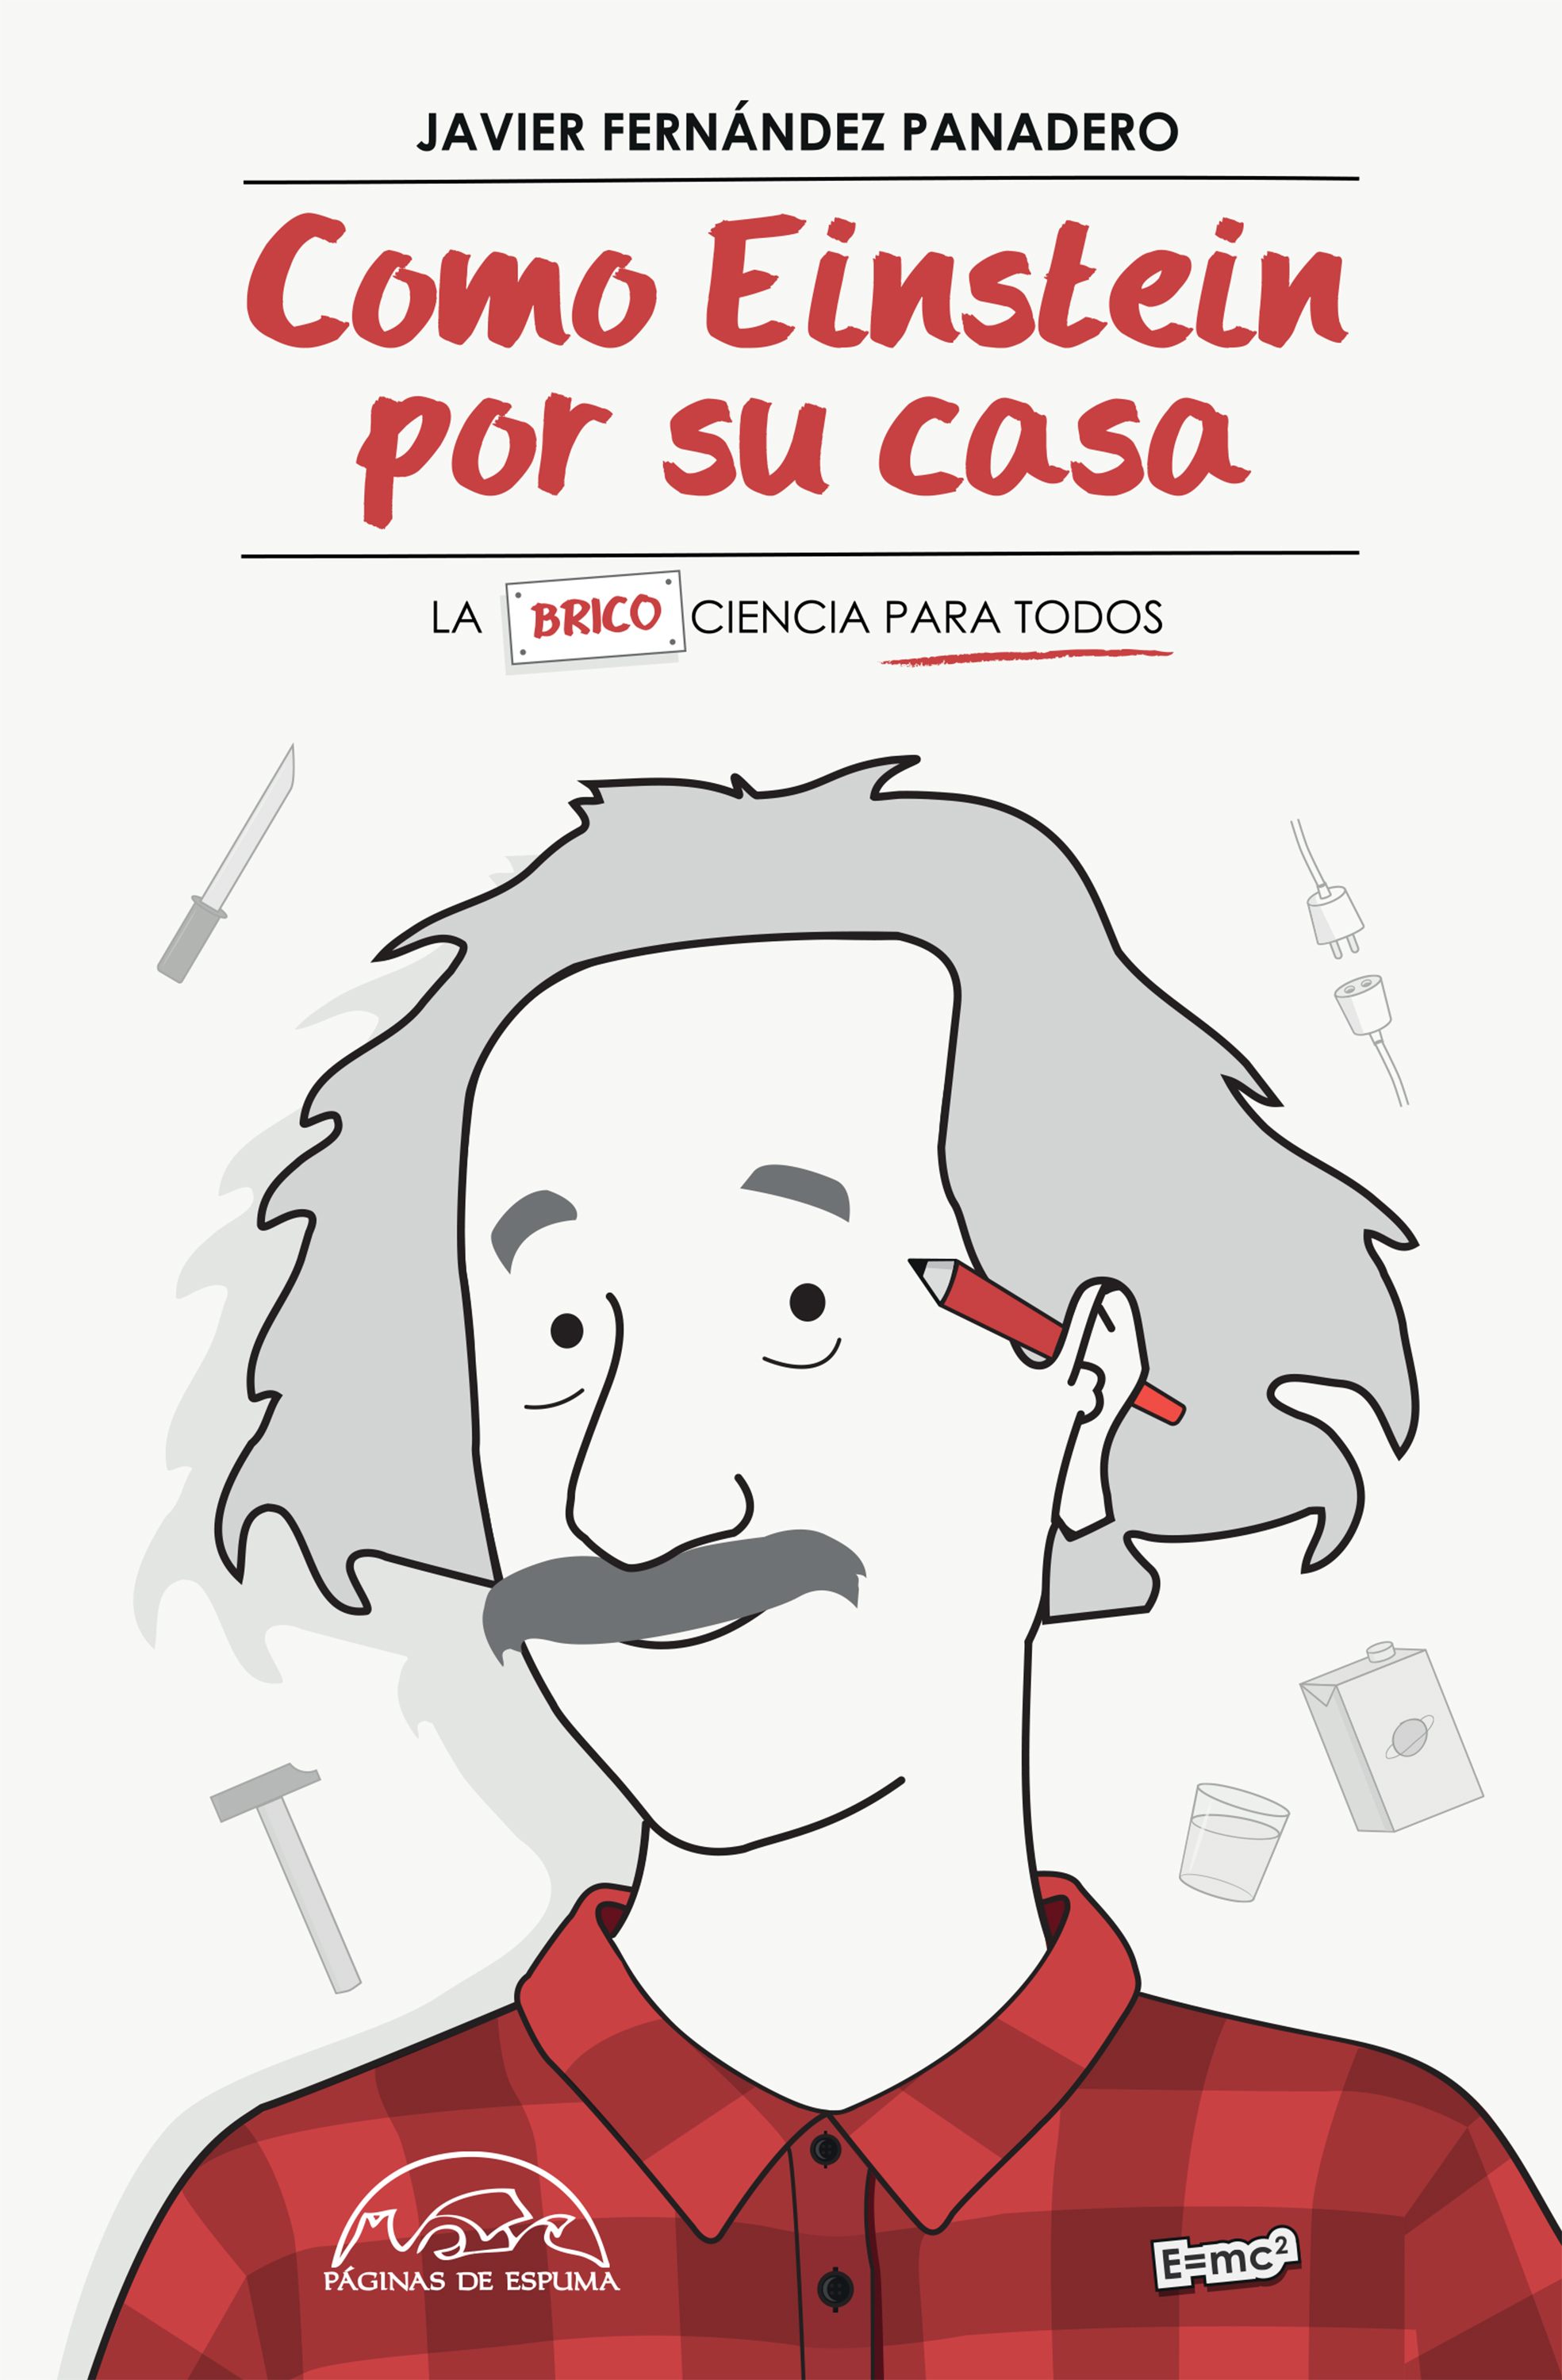 Presentación del libro 'Como Einstein por su casa' y taller de experimentos con Javier Fernández Panadero